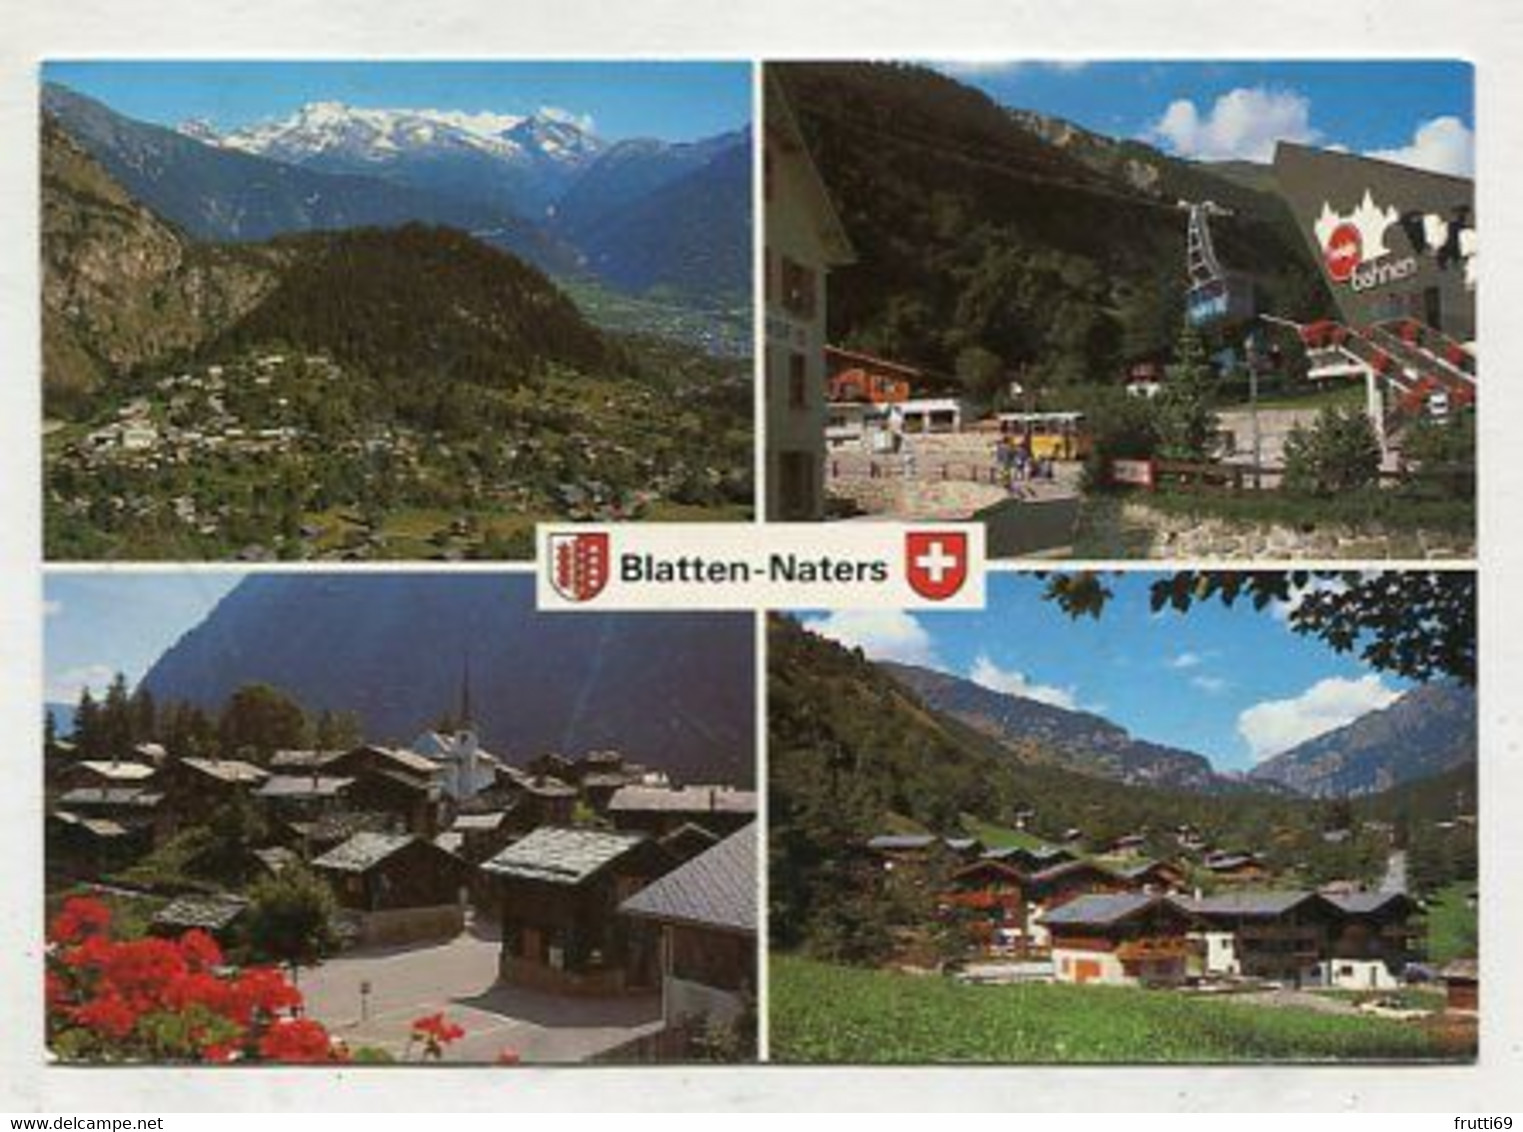 AK 086790 SWITZERLAND - Blatten-Naters - Blatten